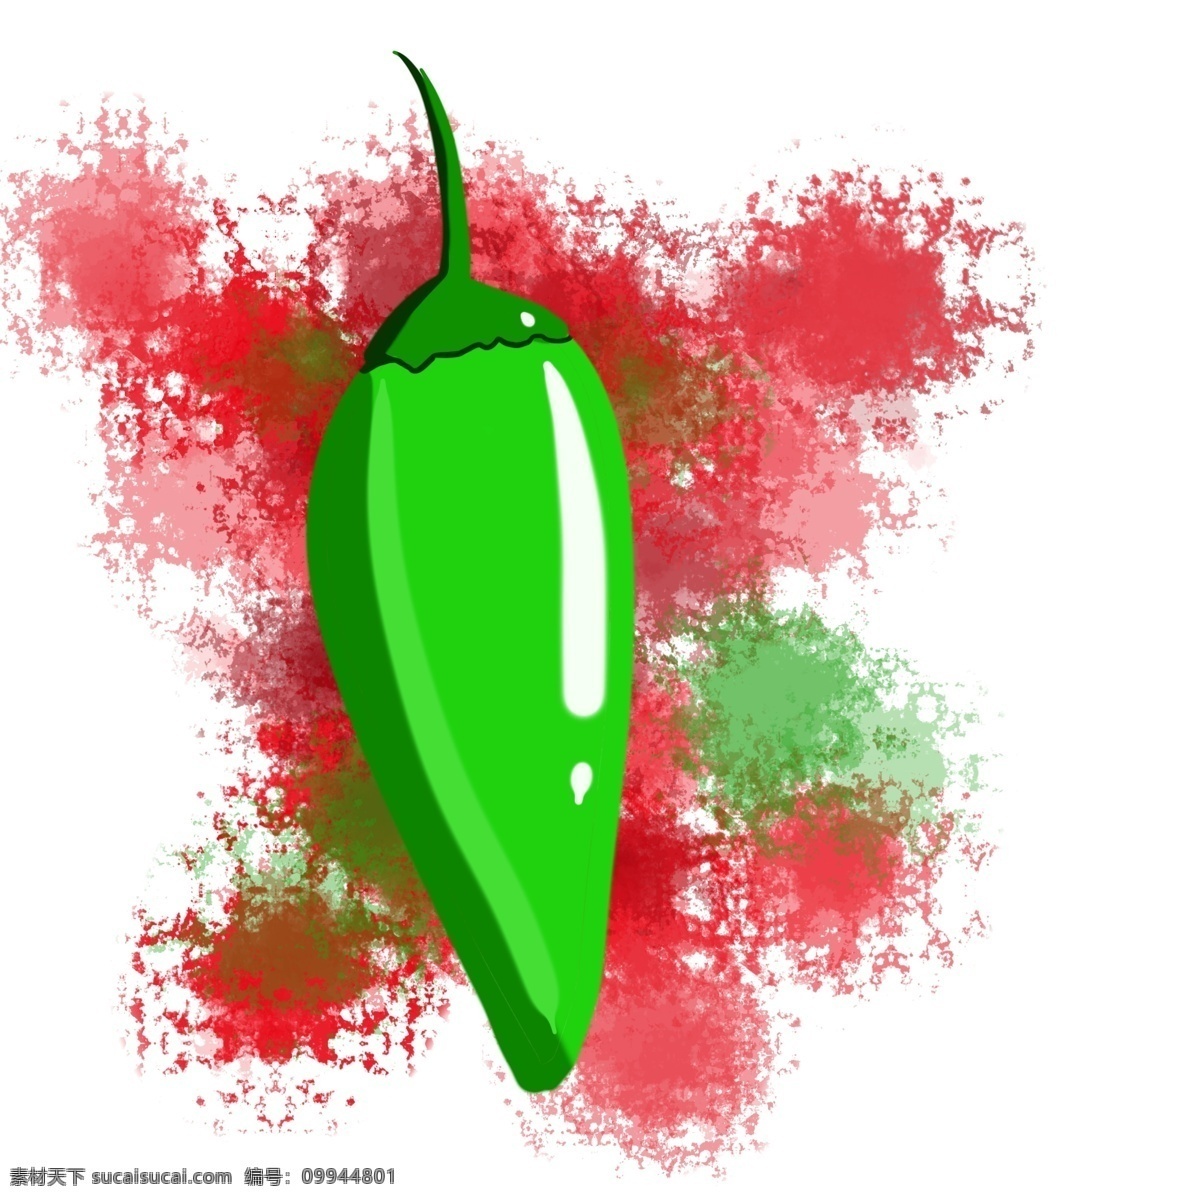 辣椒 红色 天 绿色 食物 朝天椒 调味品 叶子 绿色食品 健康 火辣 辣味 卡通 装饰 装饰画 生长 自然 种植 蔬菜 辣